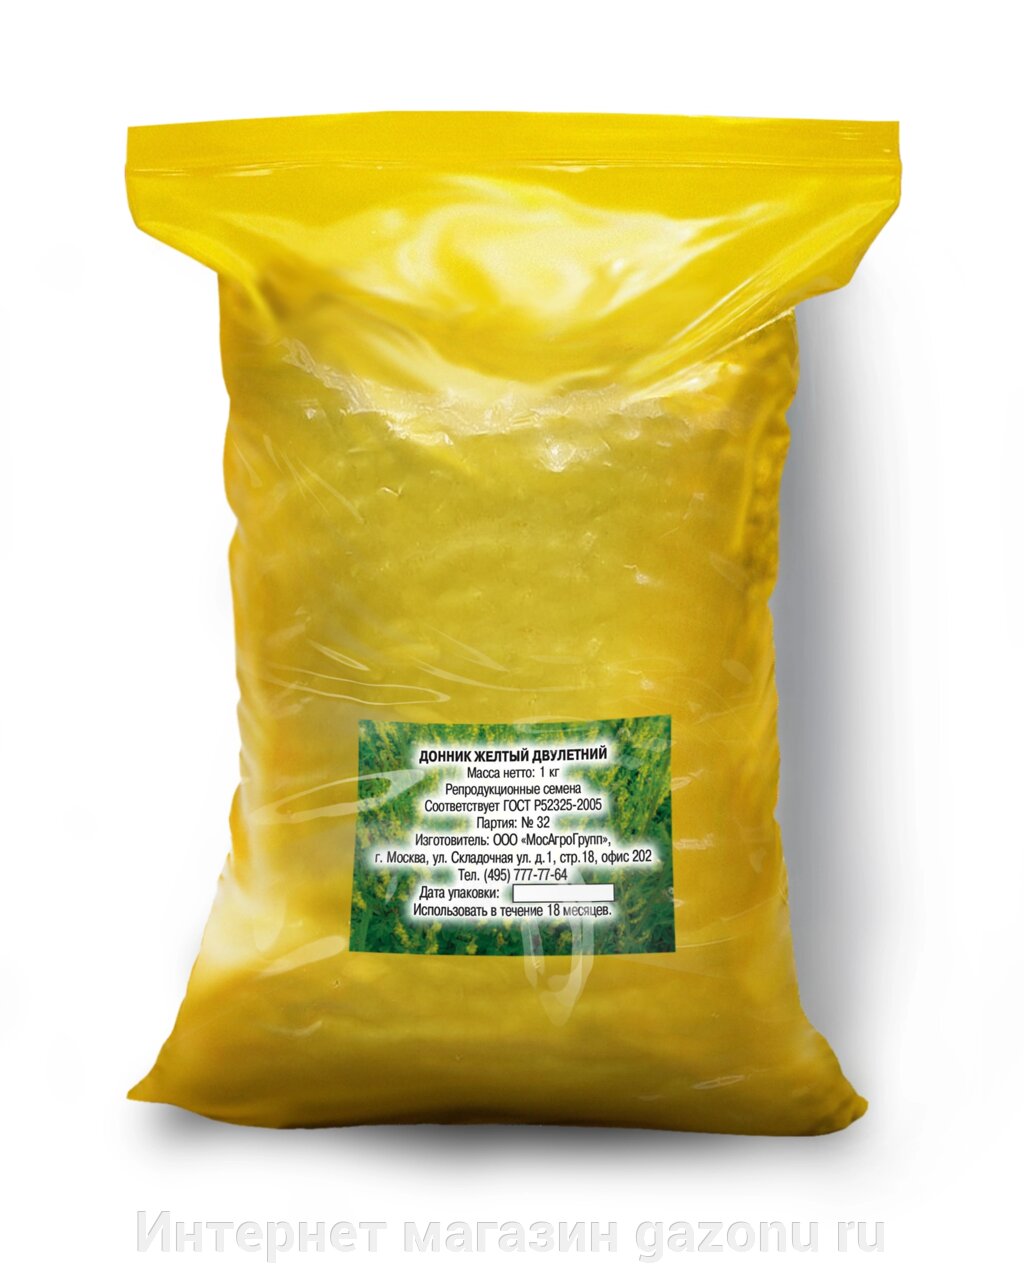 Семена донника желтого двухлетнего - 1 кг - характеристики